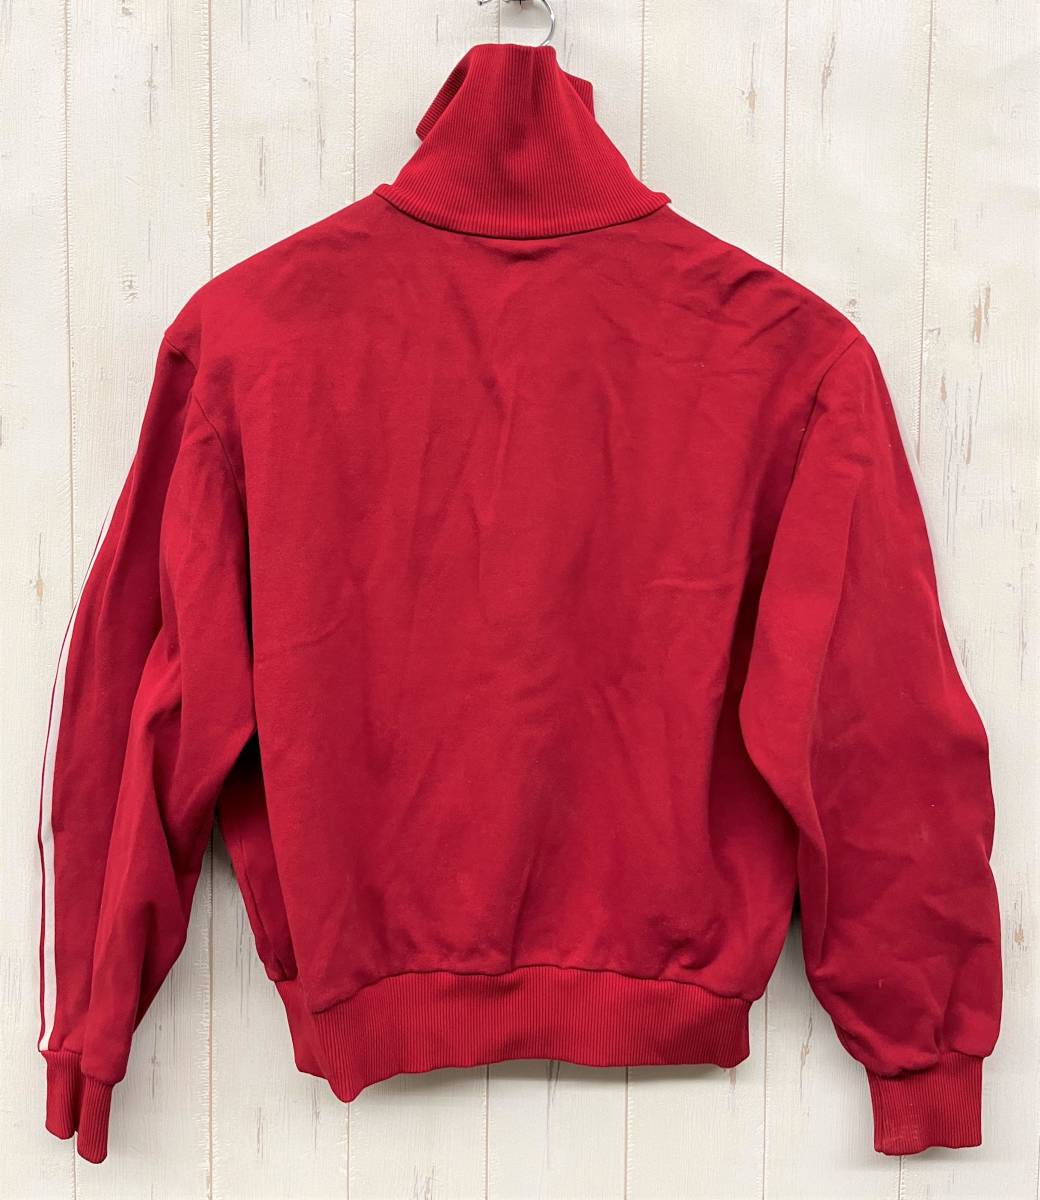 1970 period RETRO retro VINTAGE Vintage * sport wear *ADIDAS Adidas *1 size * jersey truck top * red Descente 